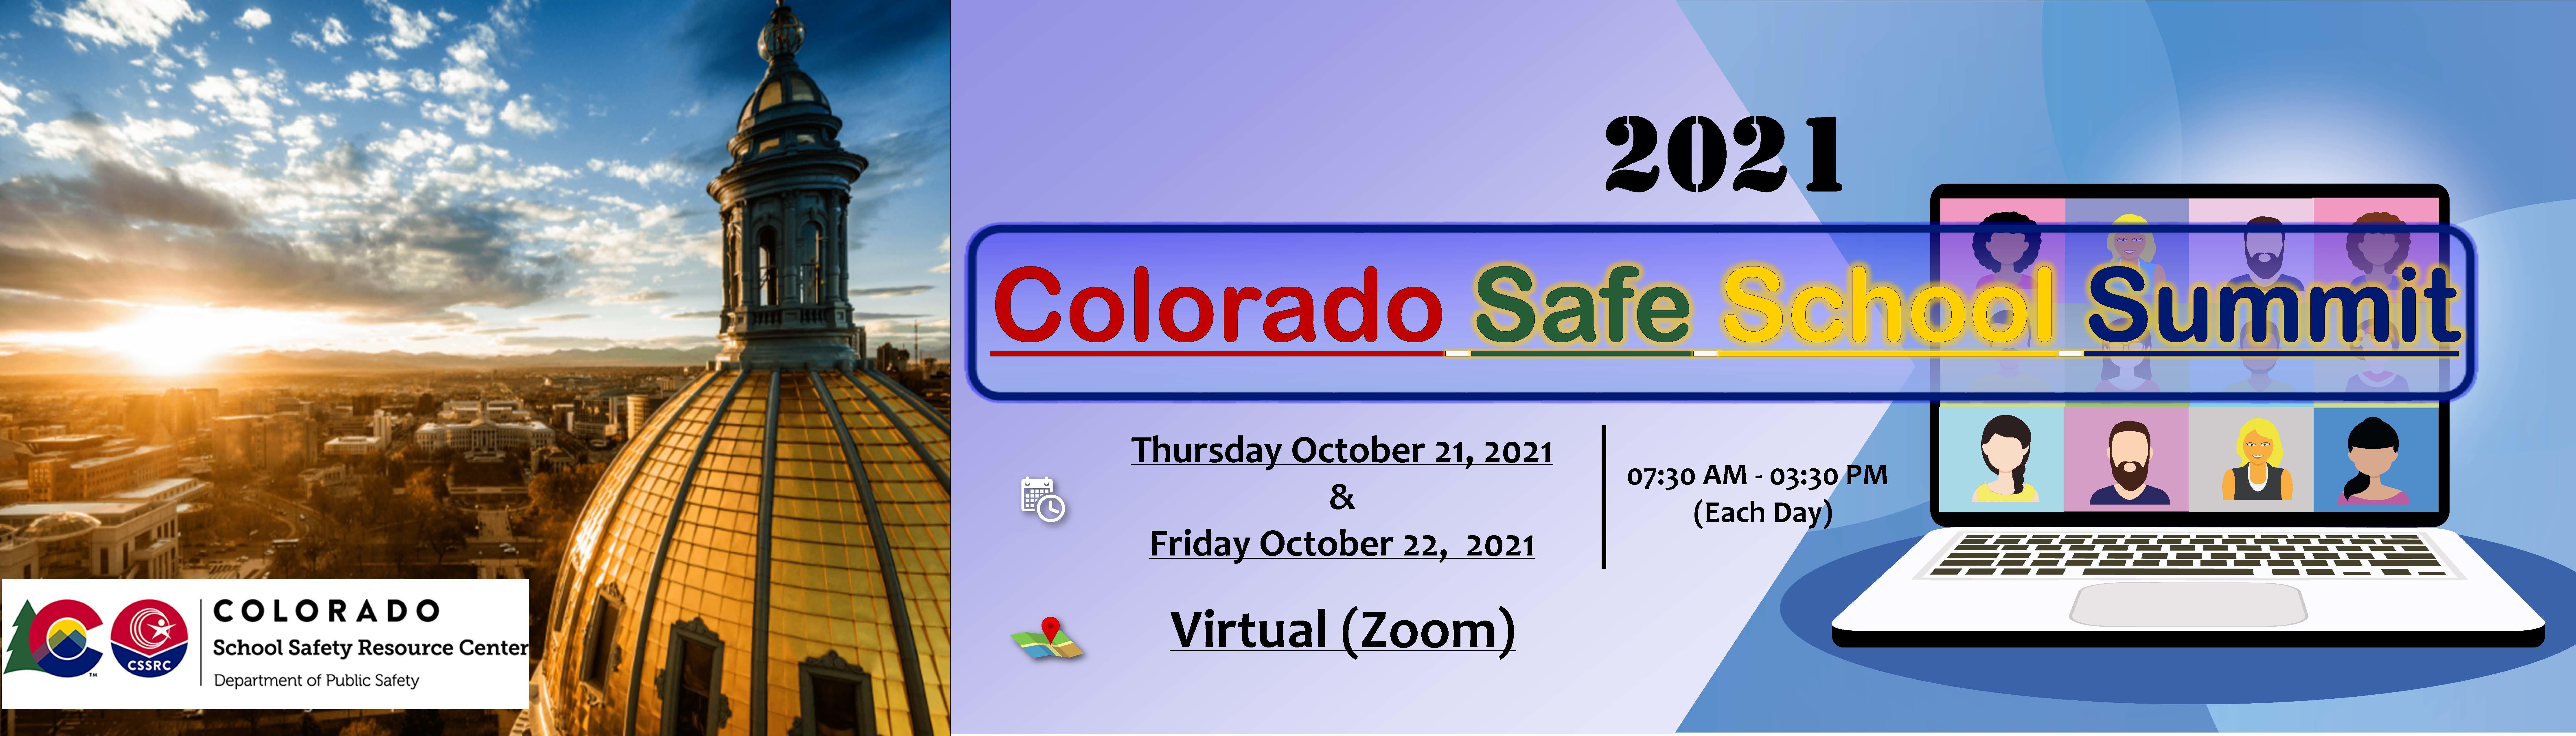 Flyer - 2021 Colorado Safe School